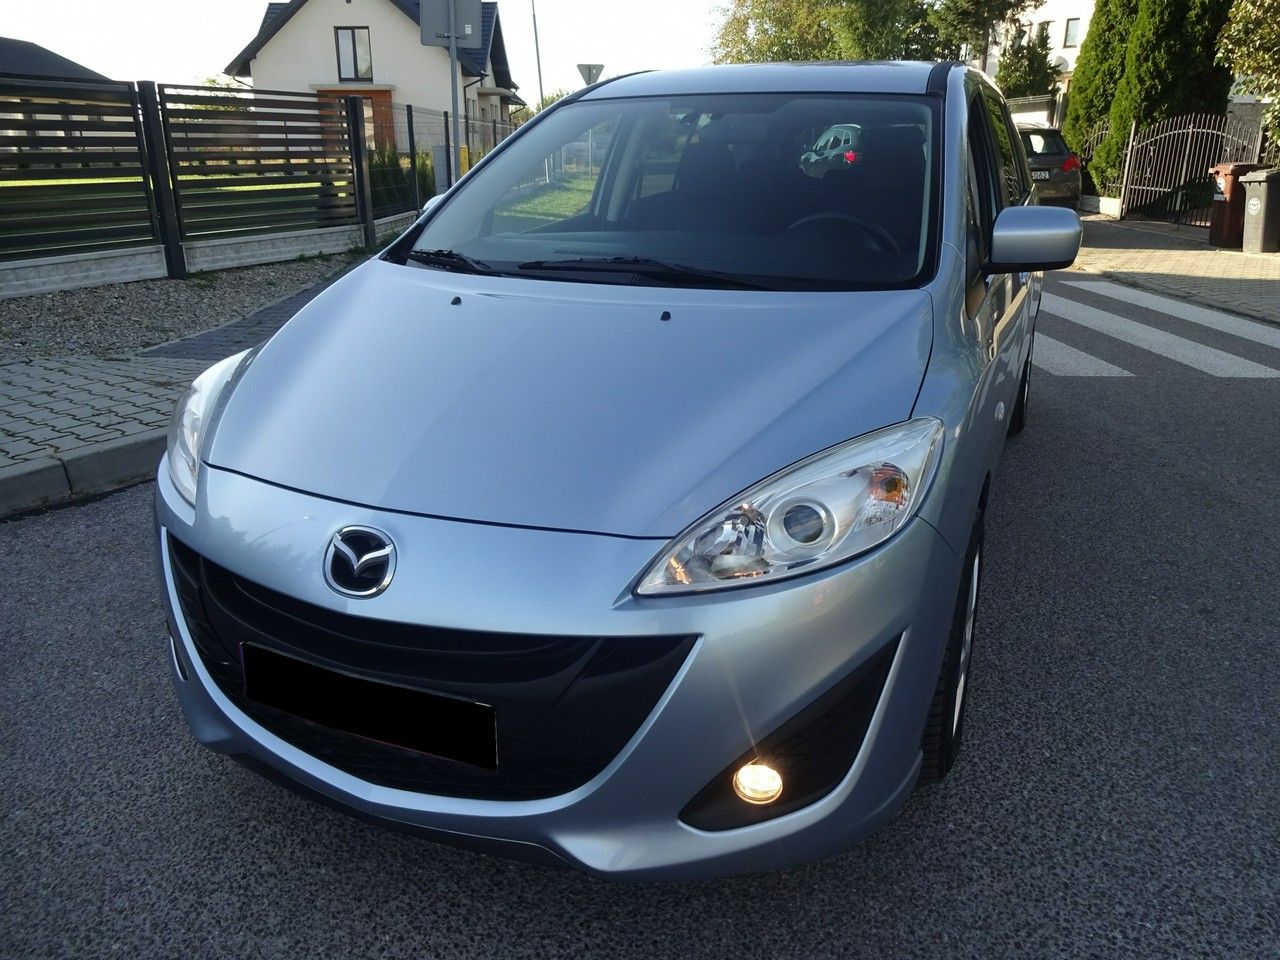 Mazda 5 7 miejsc # Benzyna # Drzwi przesuwne # Zadbana # Zamiana